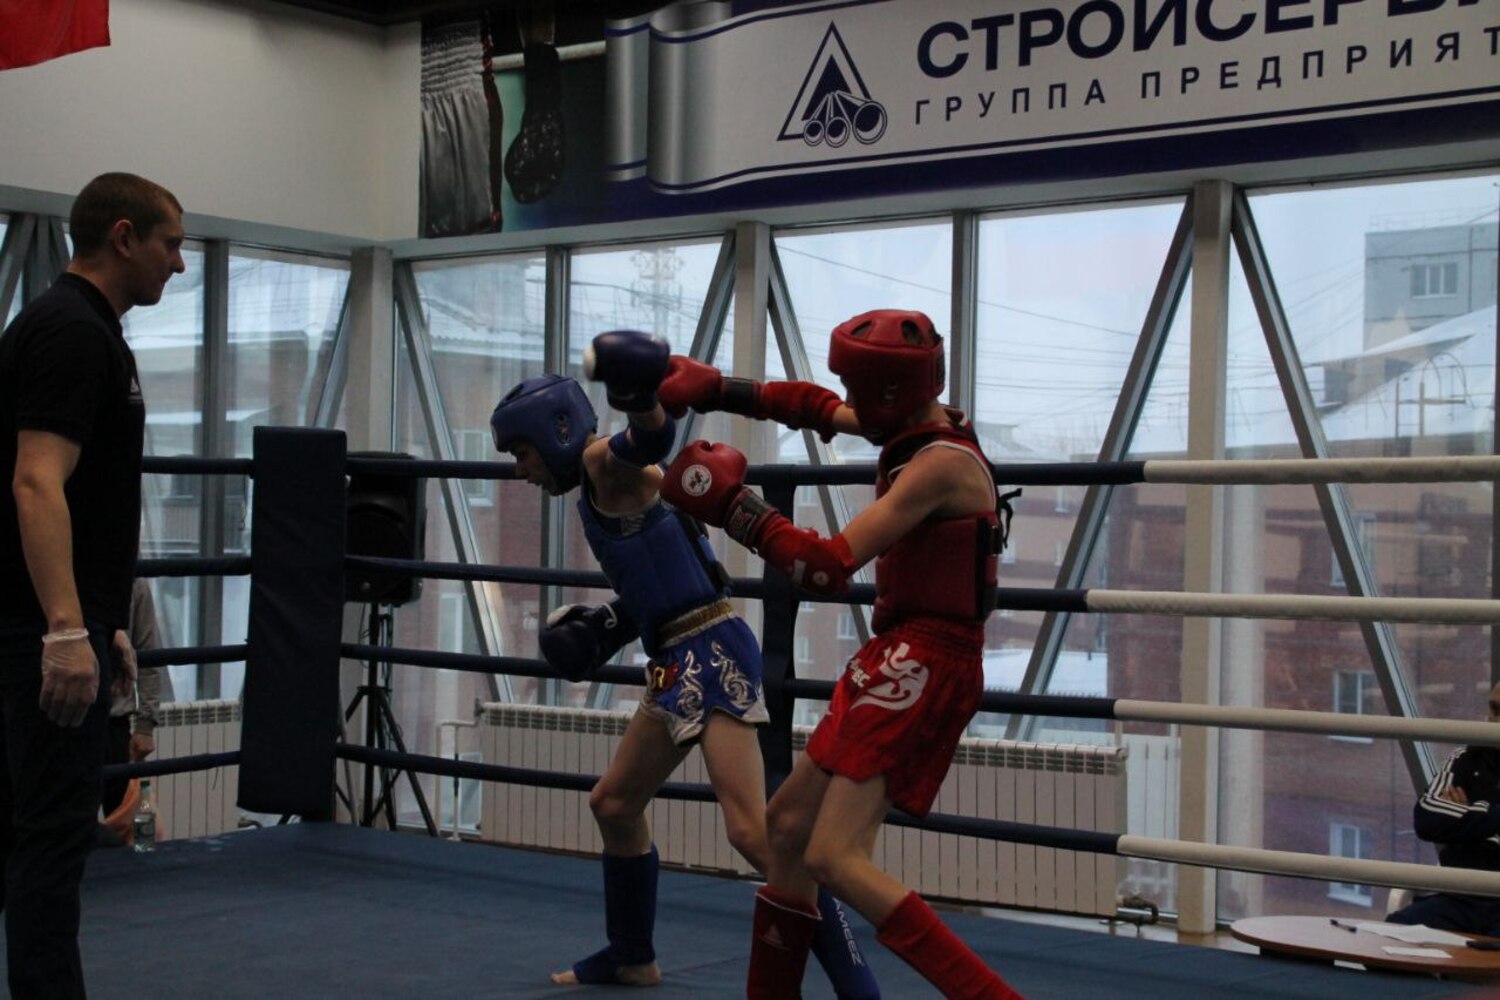 Отборочные соревнования на всероссийский турнир по тайскому боксу прошли в Кемерове при поддержке АО Стройсервис. Стройсервис